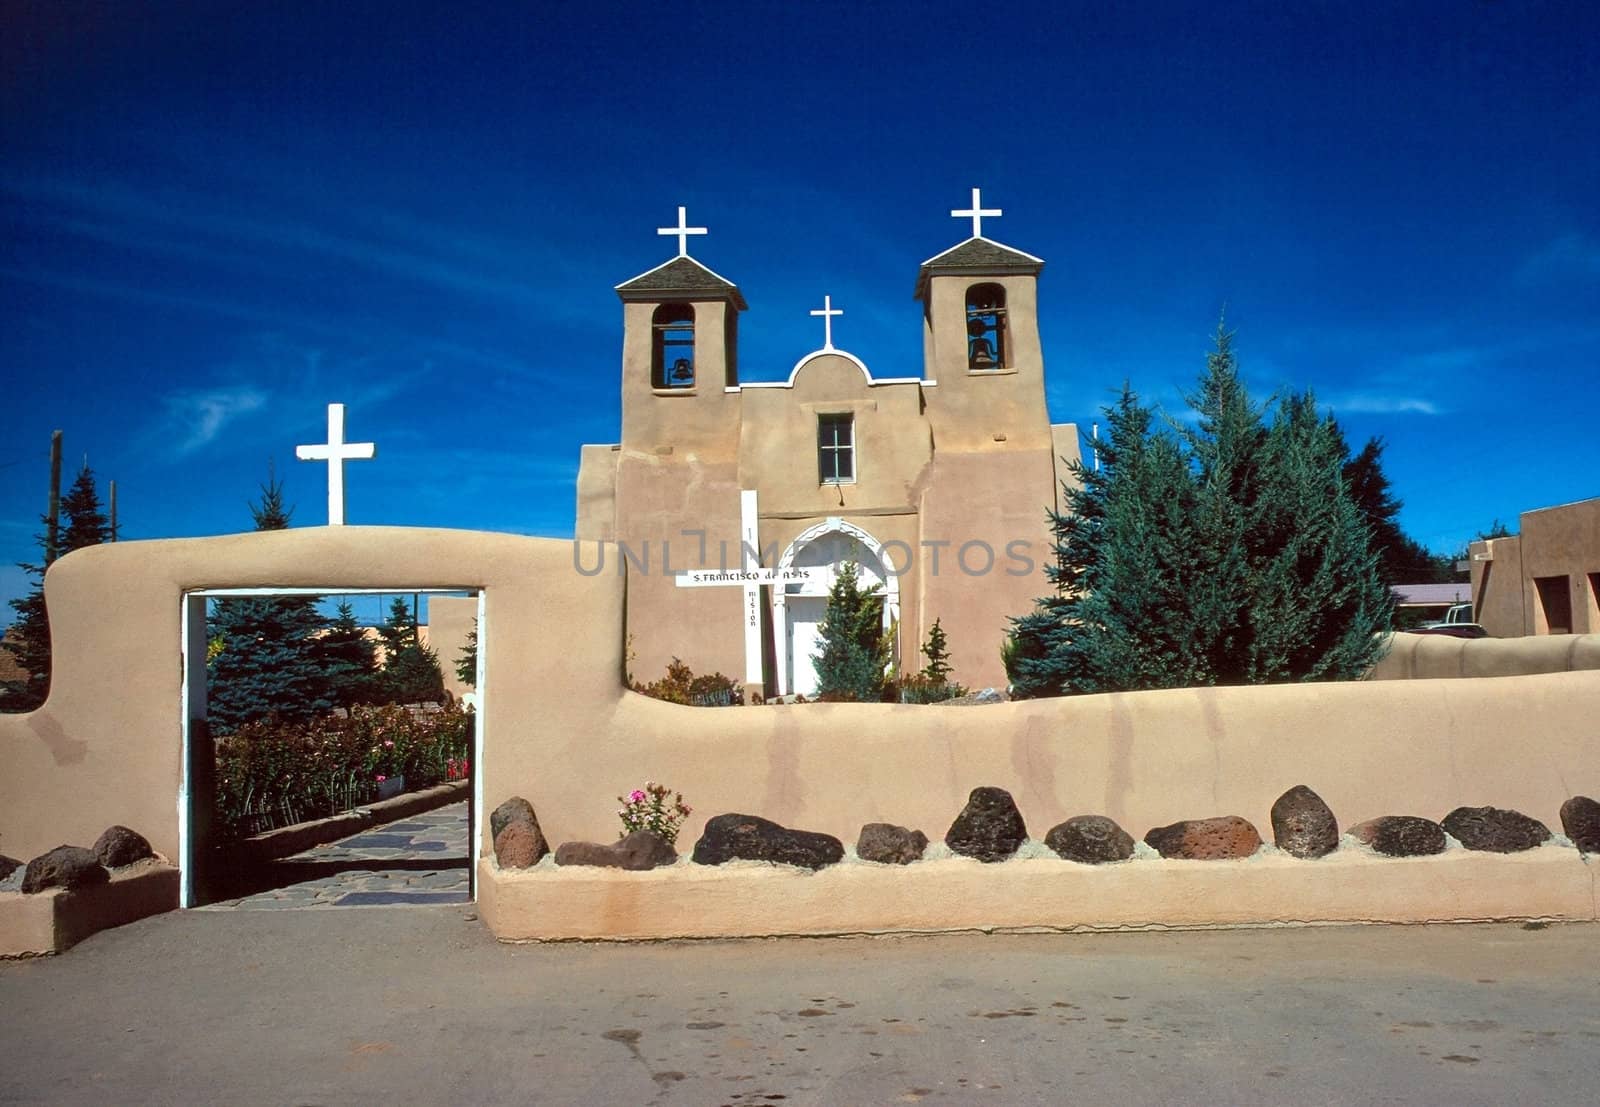 Church San Francis de Assisi in Ranchos de Taos